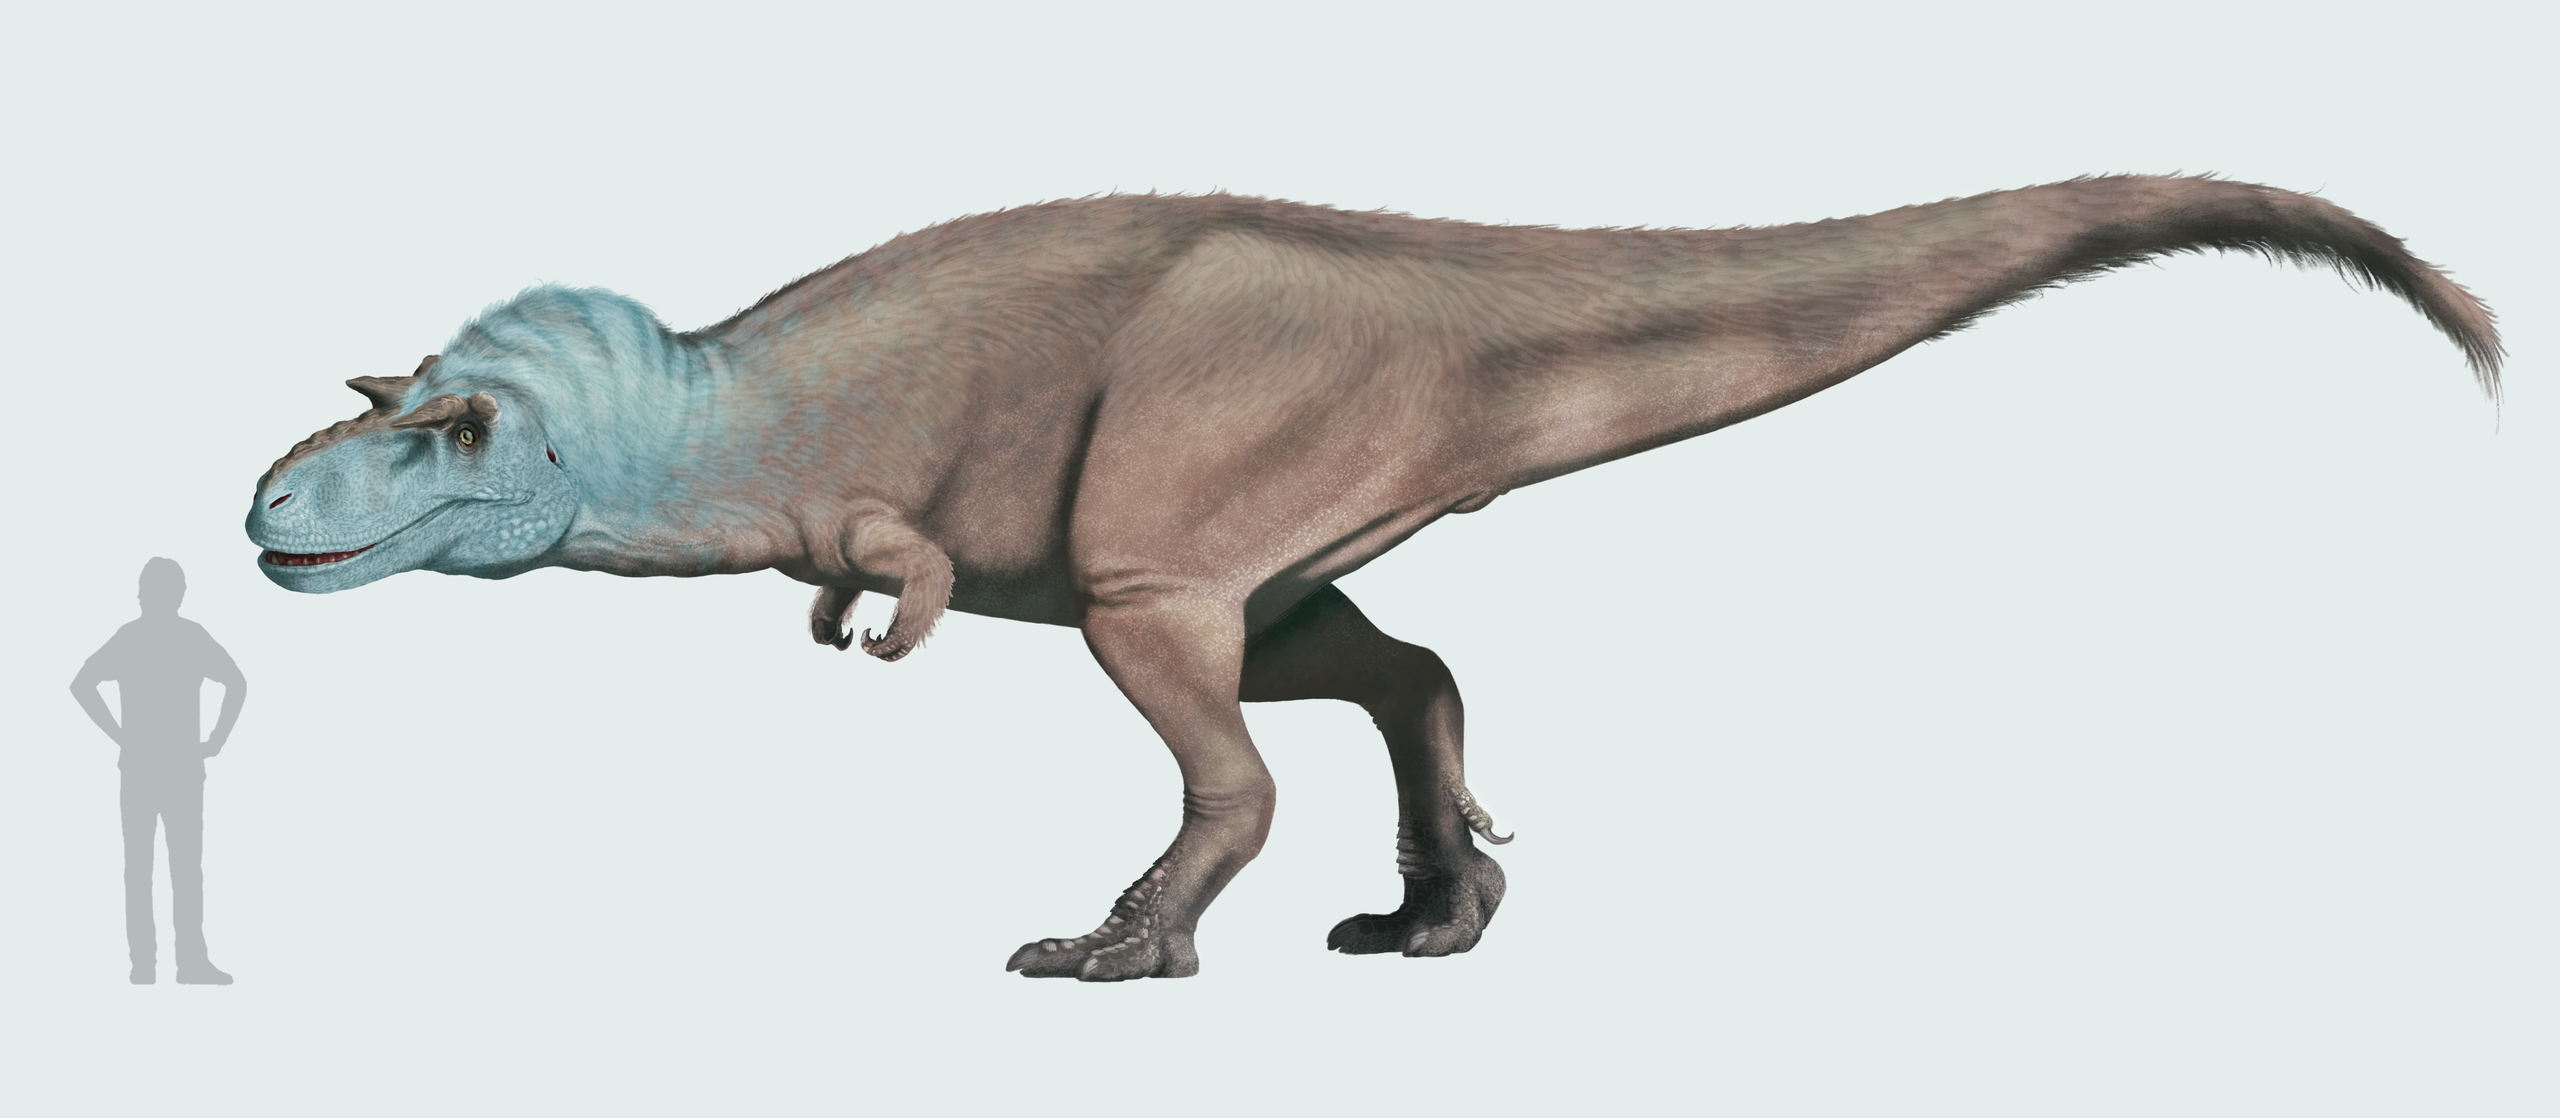 Gorgosaurus libratus byl sice menší z dvojice koexistujících tyranosauridů v dávných ekosystémech souvrství Dinosaur Park, přesto by však tento až třítunový a bezmála desetimetrový dravec při blízkém porovnání doslova zesměšnil i ty největší současné